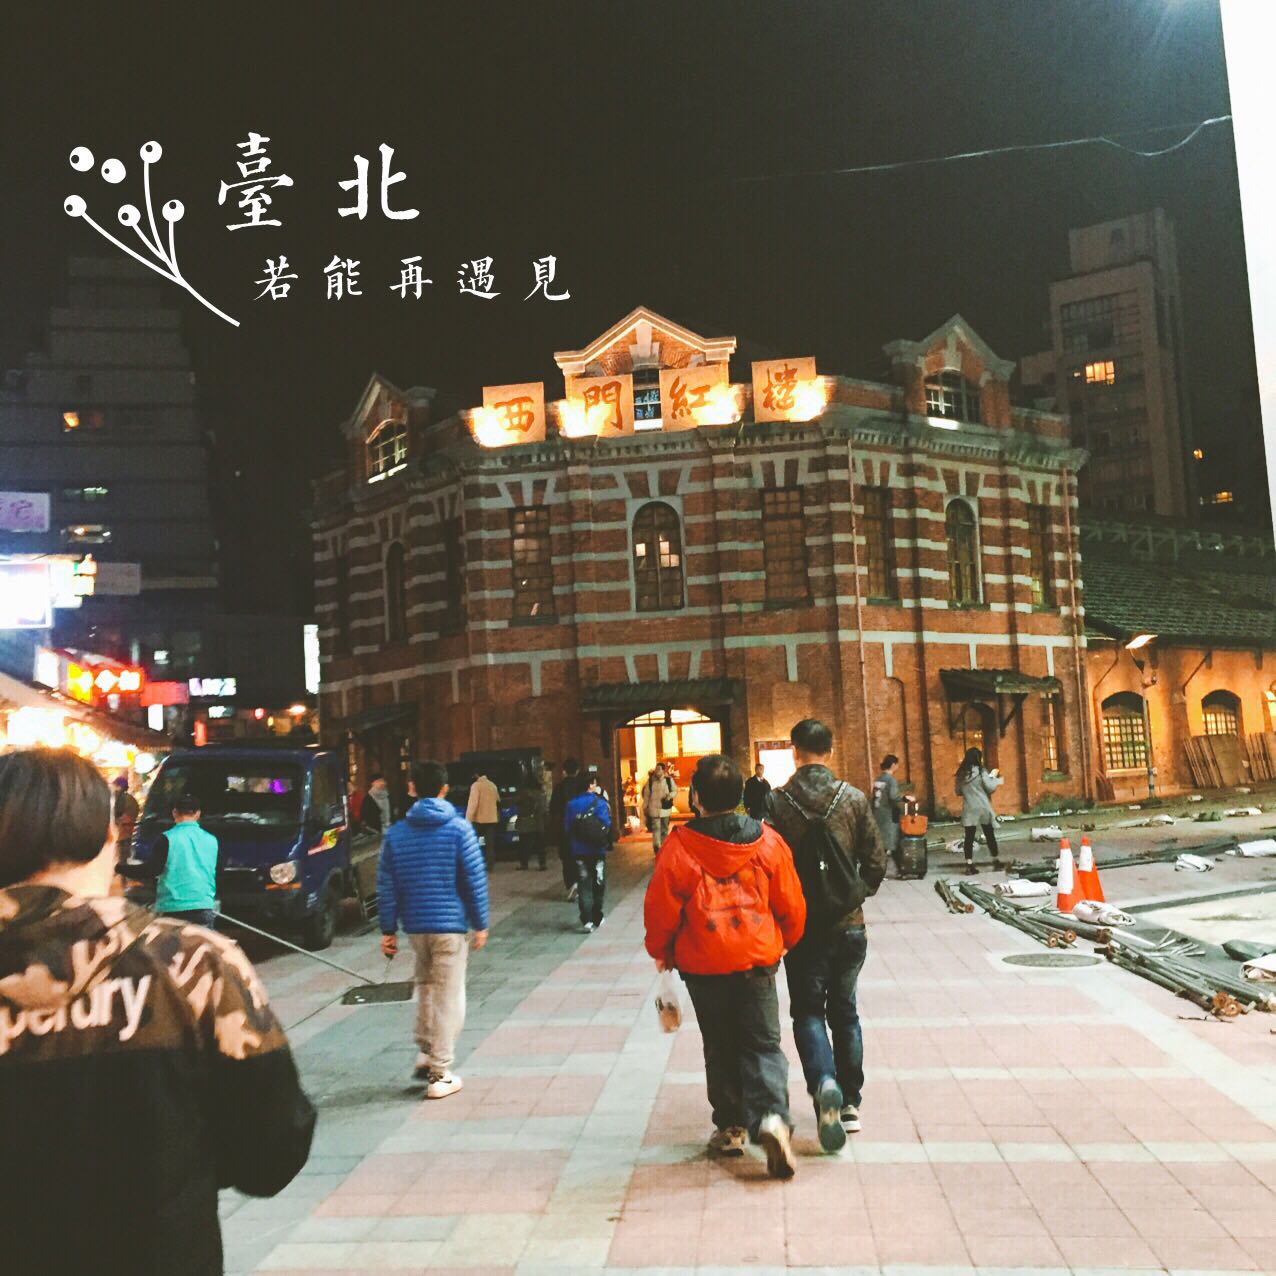 西门町果然是台北年轻人的聚集地～有非常多的年轻化的店铺，还有店铺卖各高